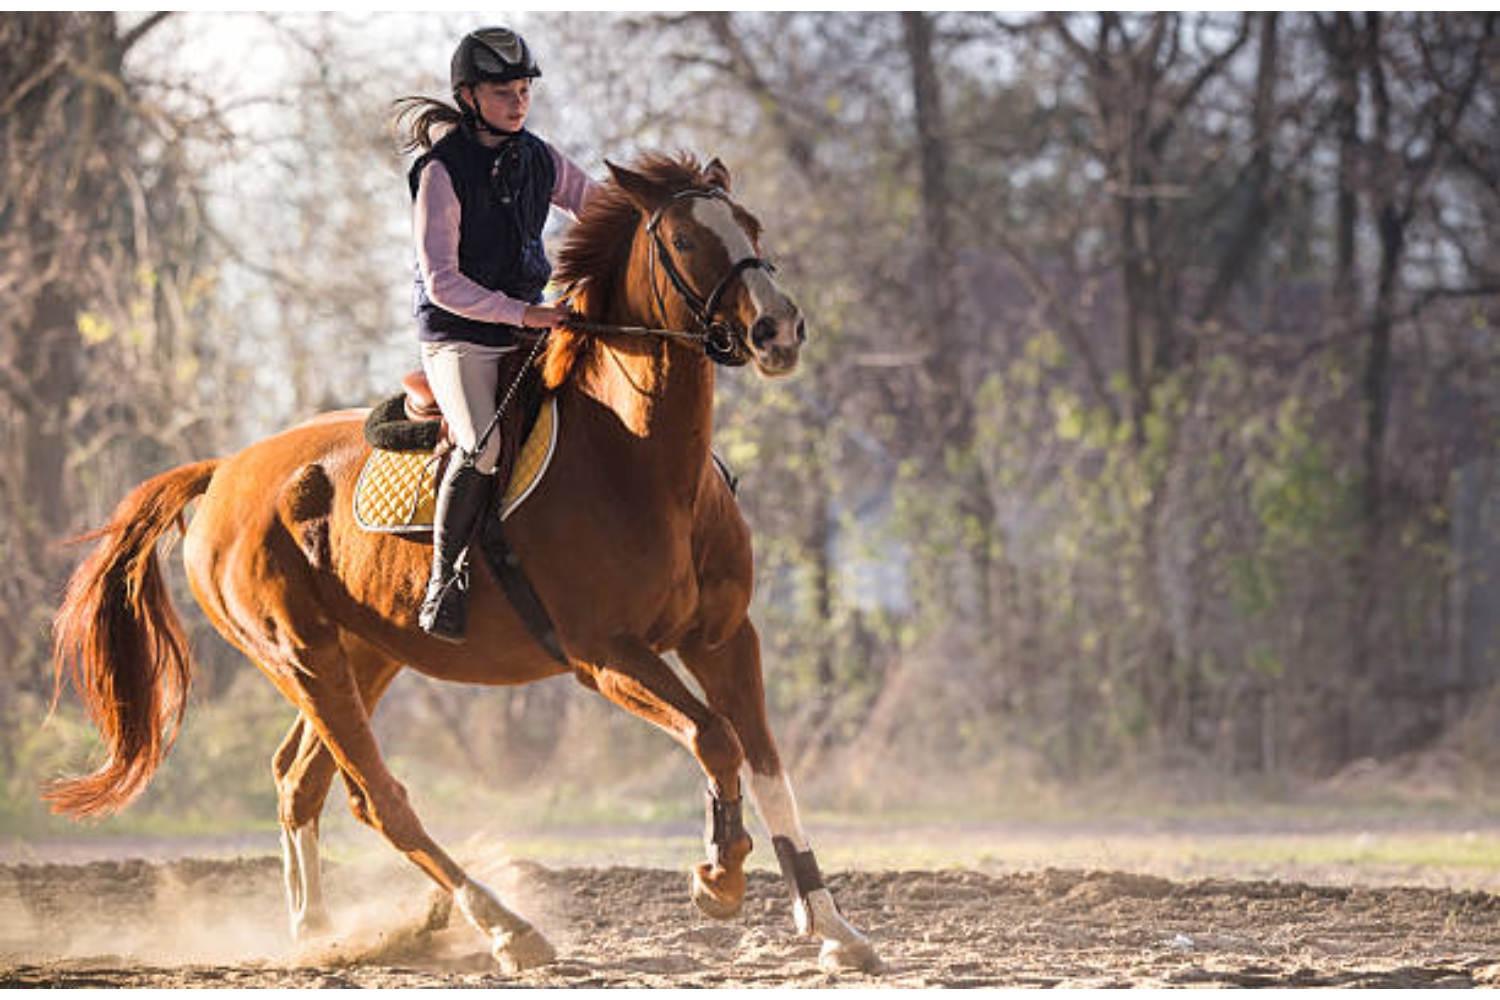 Heb jij ook een paard dat snel gestrest en nerveus is? Lastig! Een gestrest paard heeft namelijk sneller last van ongemakken en is minder soepel in te zetten in de paardensport. De oorzaak van de stress is niet altijd makkelijk te achterhalen. Bovendien hebben sommige paarden simpelweg gewoon meer aanleg voor stress, net zoals bij mensen.